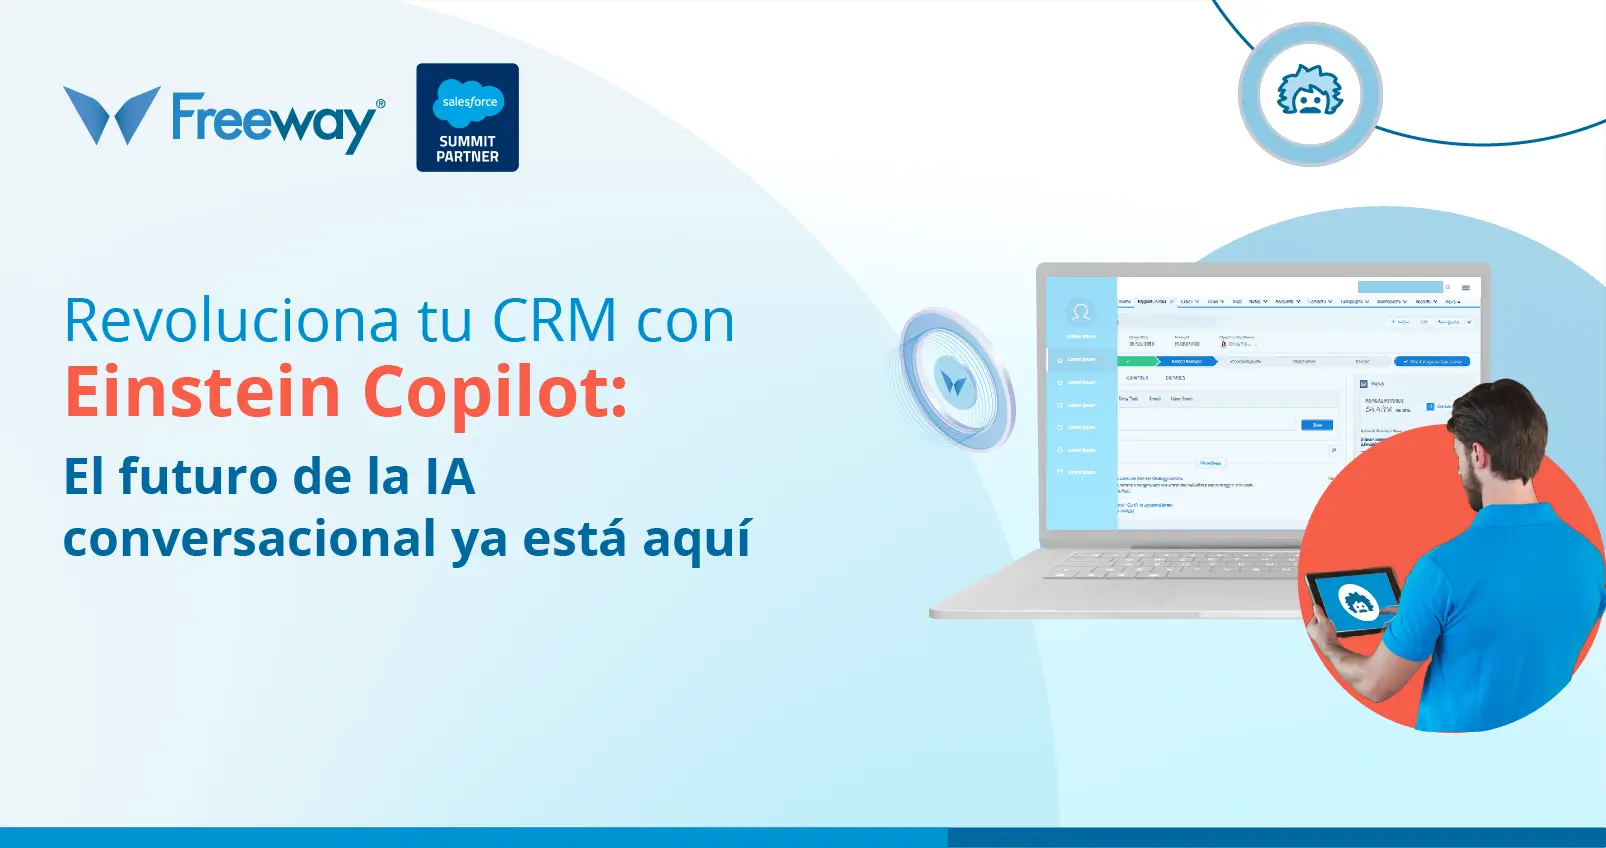 Asesor de ventas utilizando Einstein Copilot para interactuar con un cliente de manera eficiente y satisfactoria.